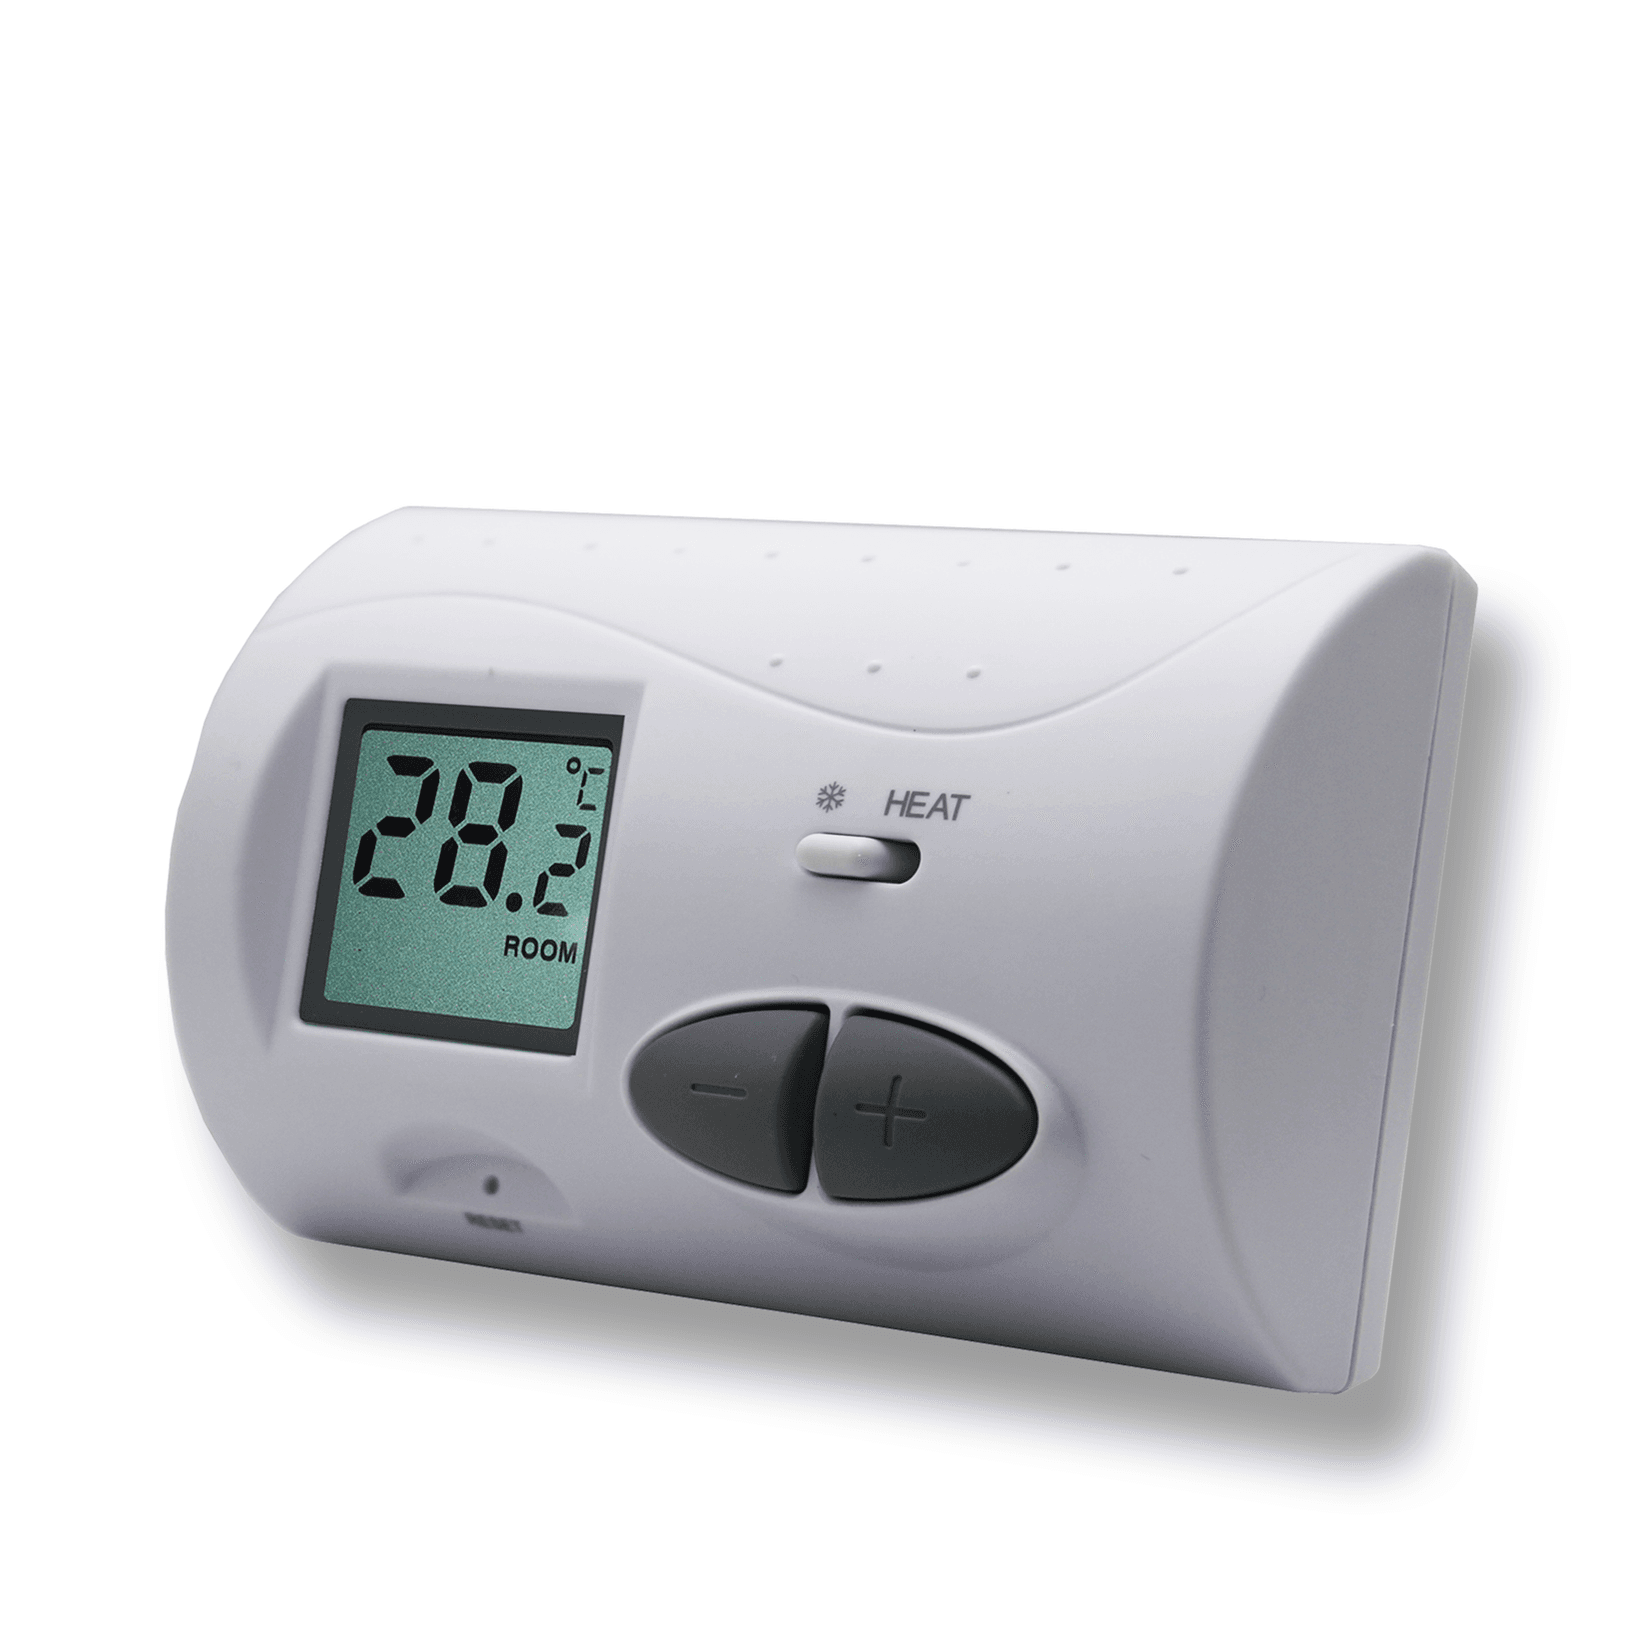 Selected image for NERO Sobni bežični termostat bez programa Q3